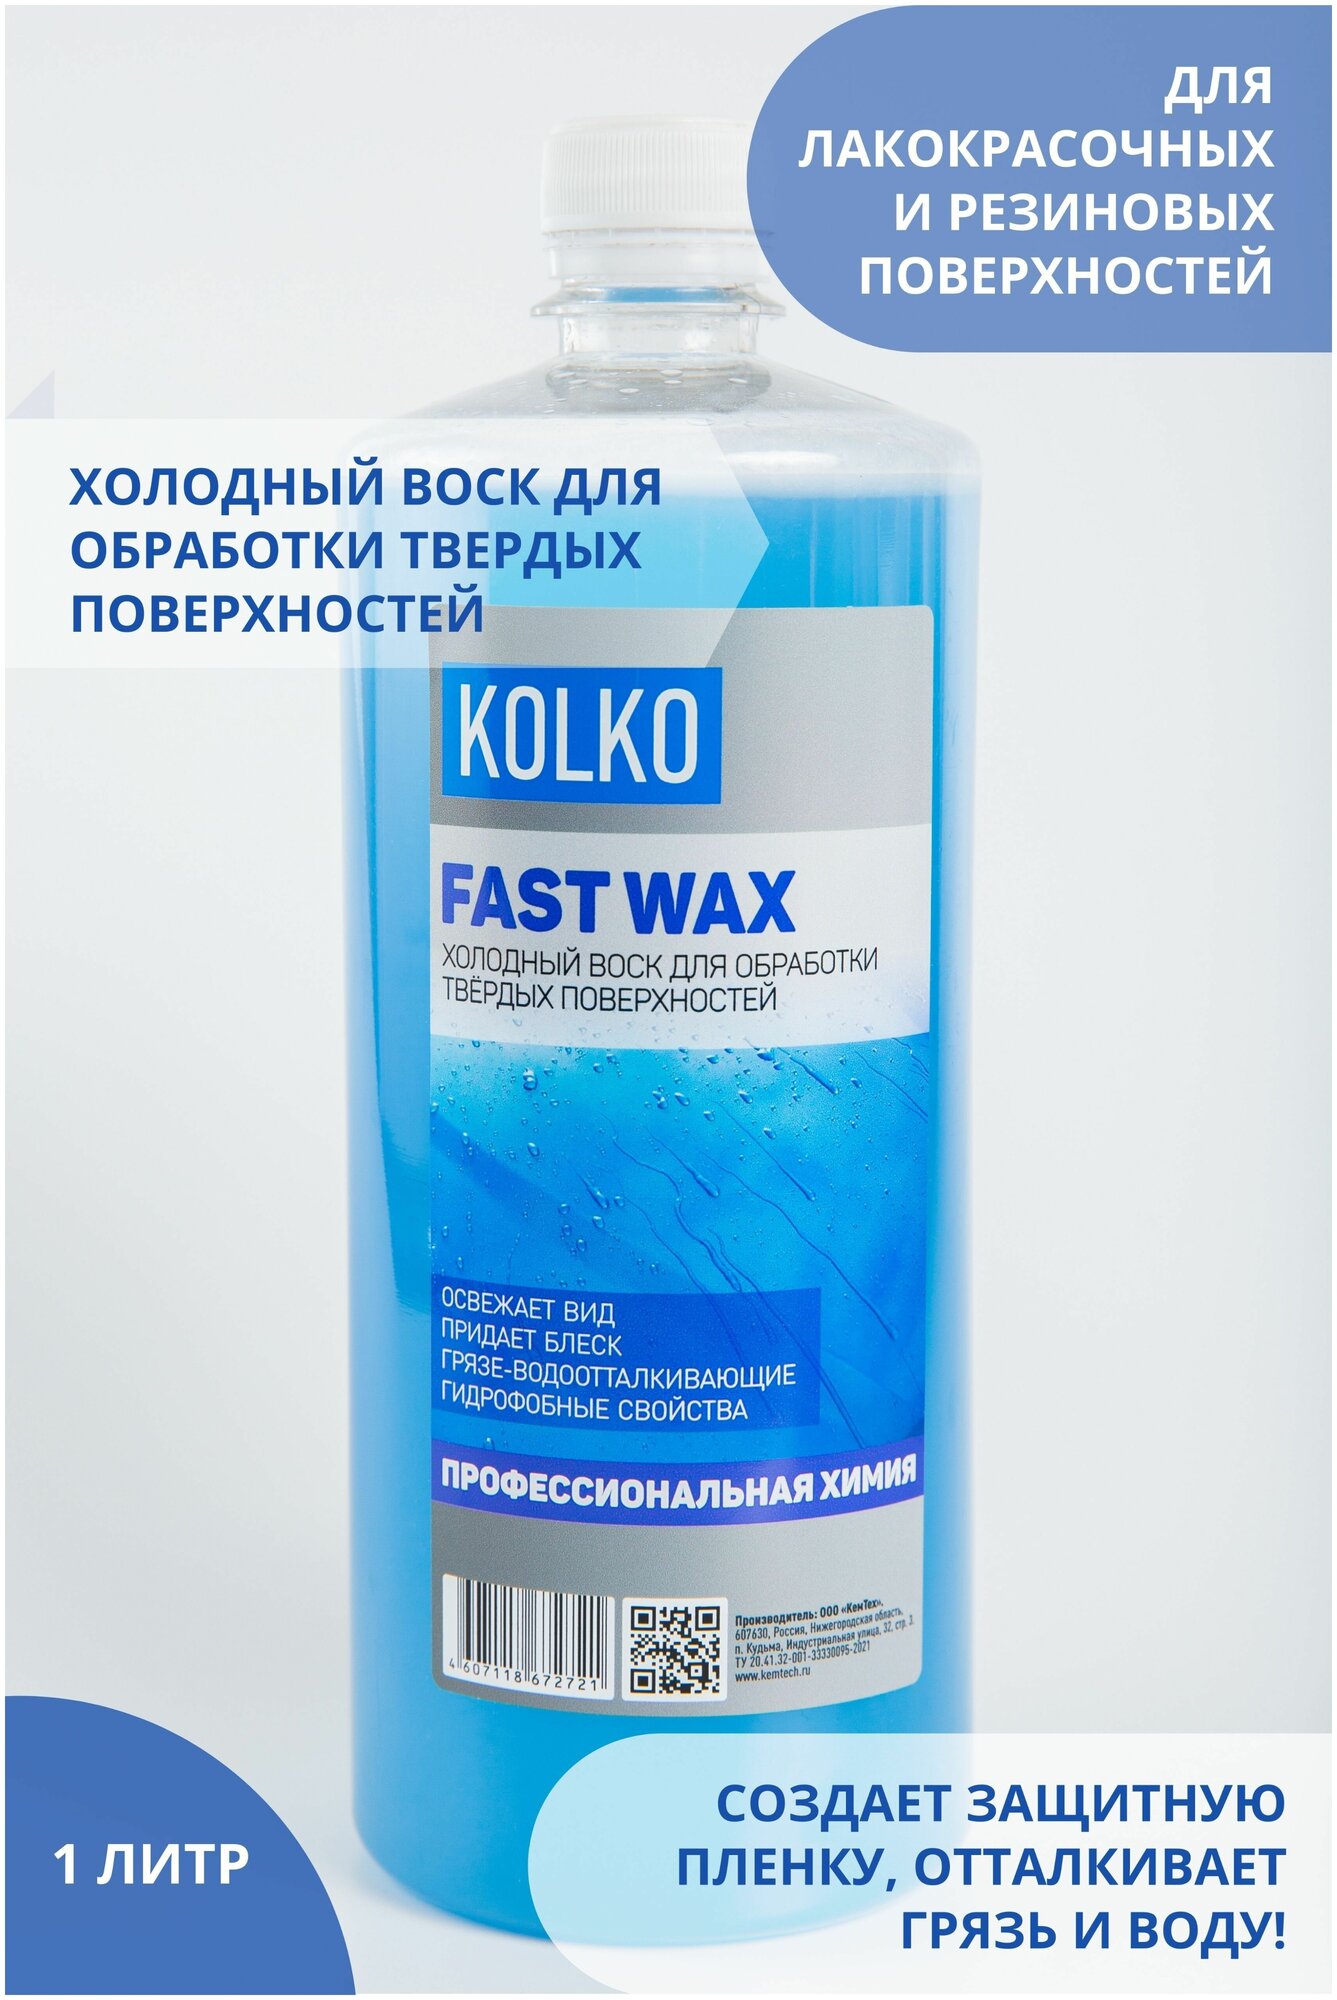 Холодный воск для автомобиля Kolko Fast Wax (концентрат) для лакокрасочных и резиновых поверхностей грязеотталкивающее средство 1 литр